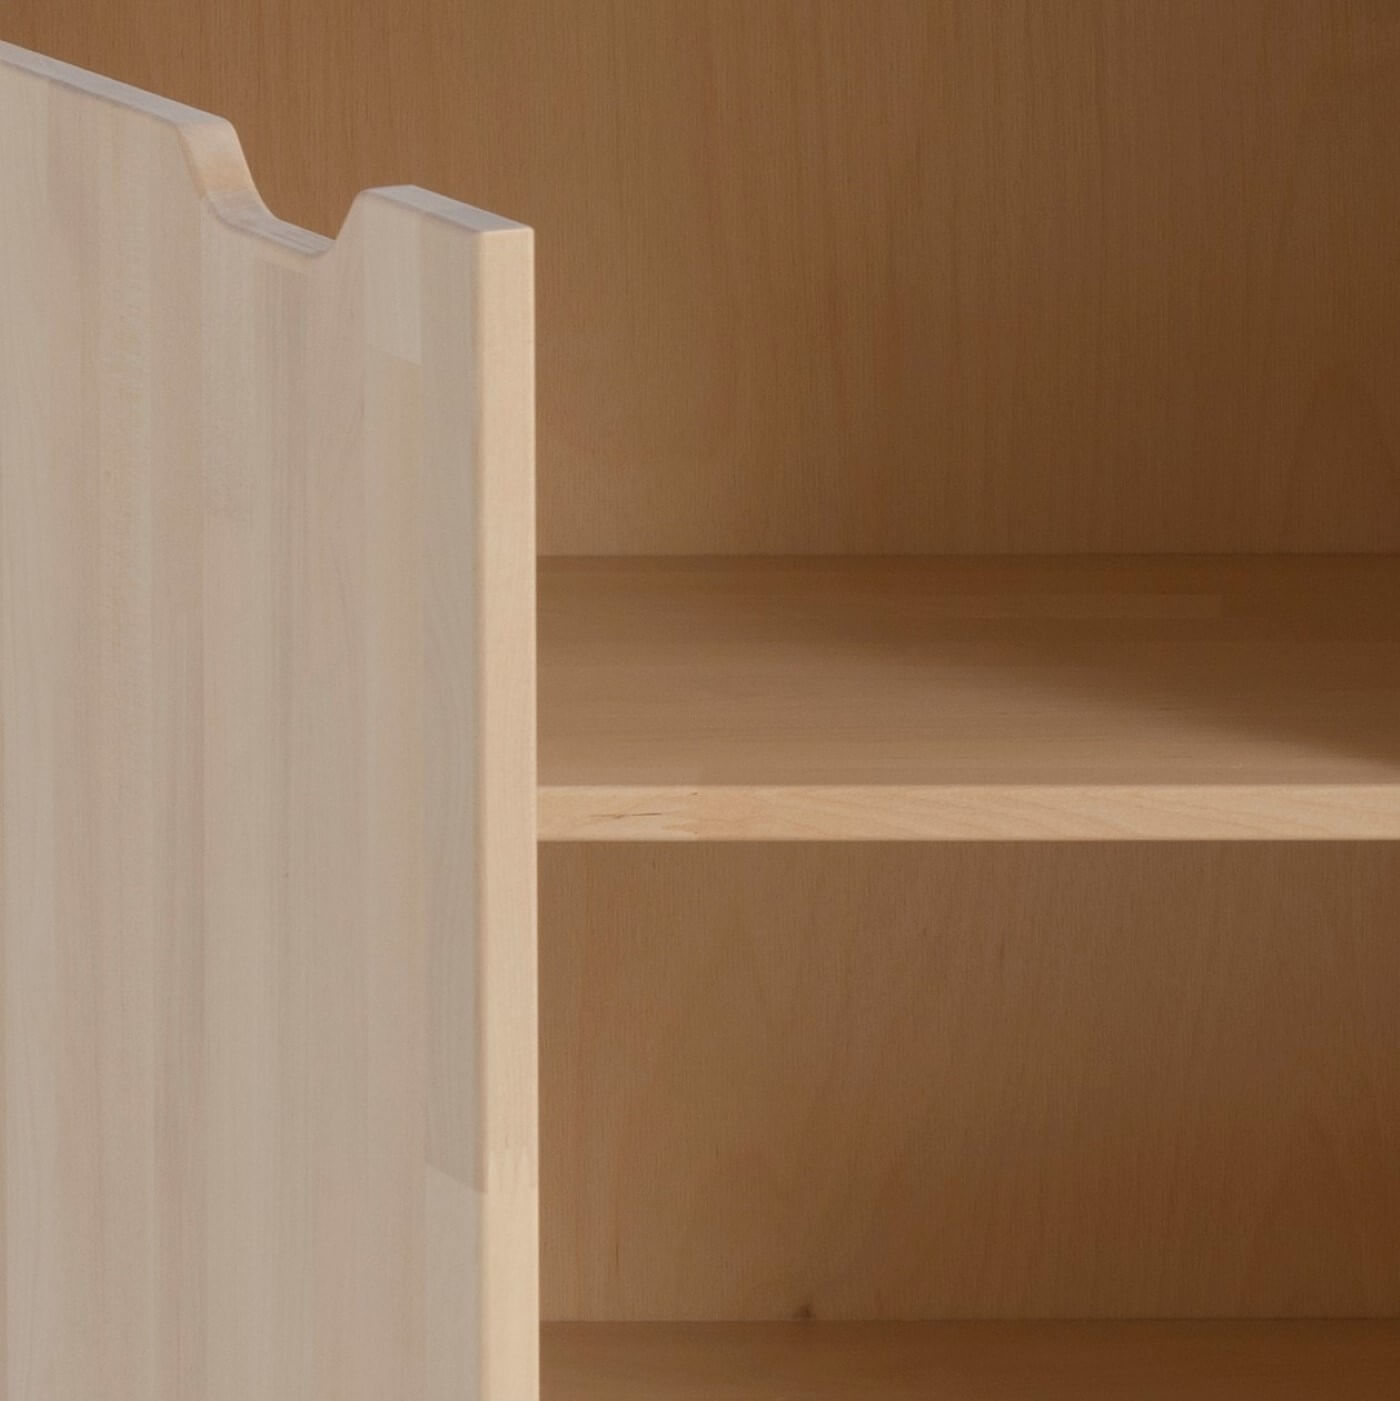 Długa komoda KOLO. Uchylone nowoczesne drewniane drzwiczki, widoczna drewniana półka ze skandynawskiej brzozy